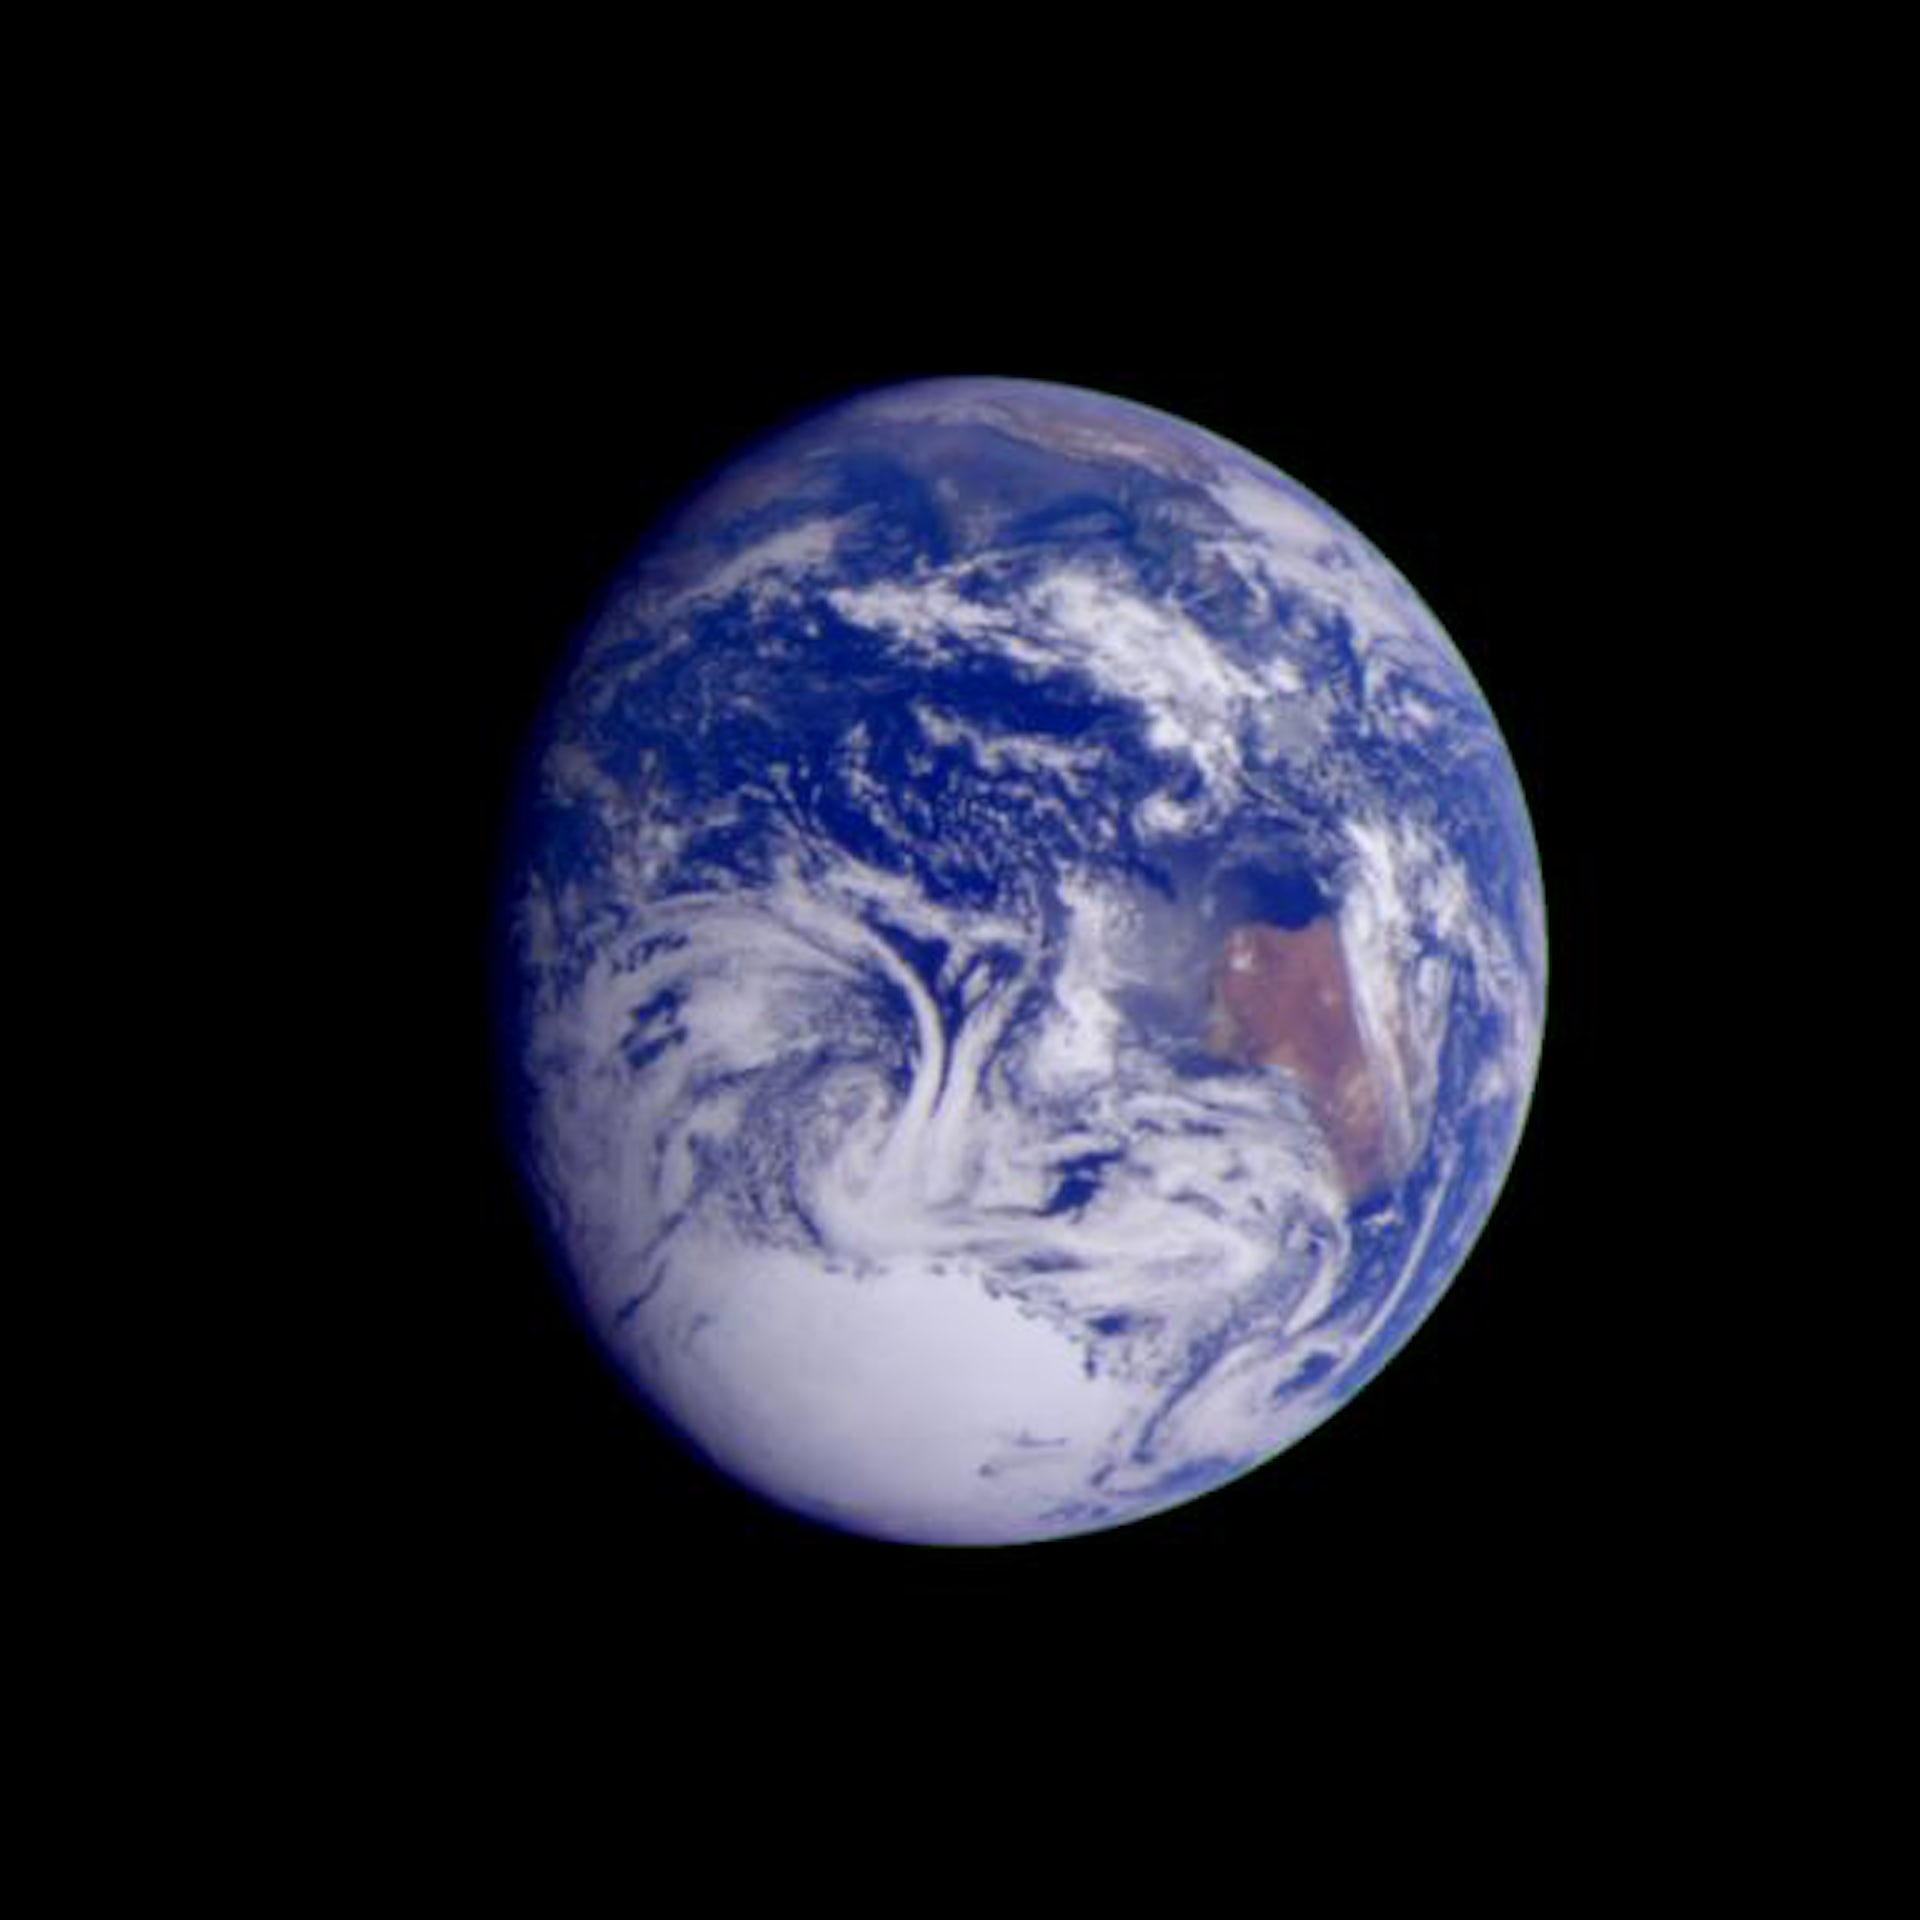 갈릴레오 우주선이 2.4만km 거리에서 촬영한 사진.